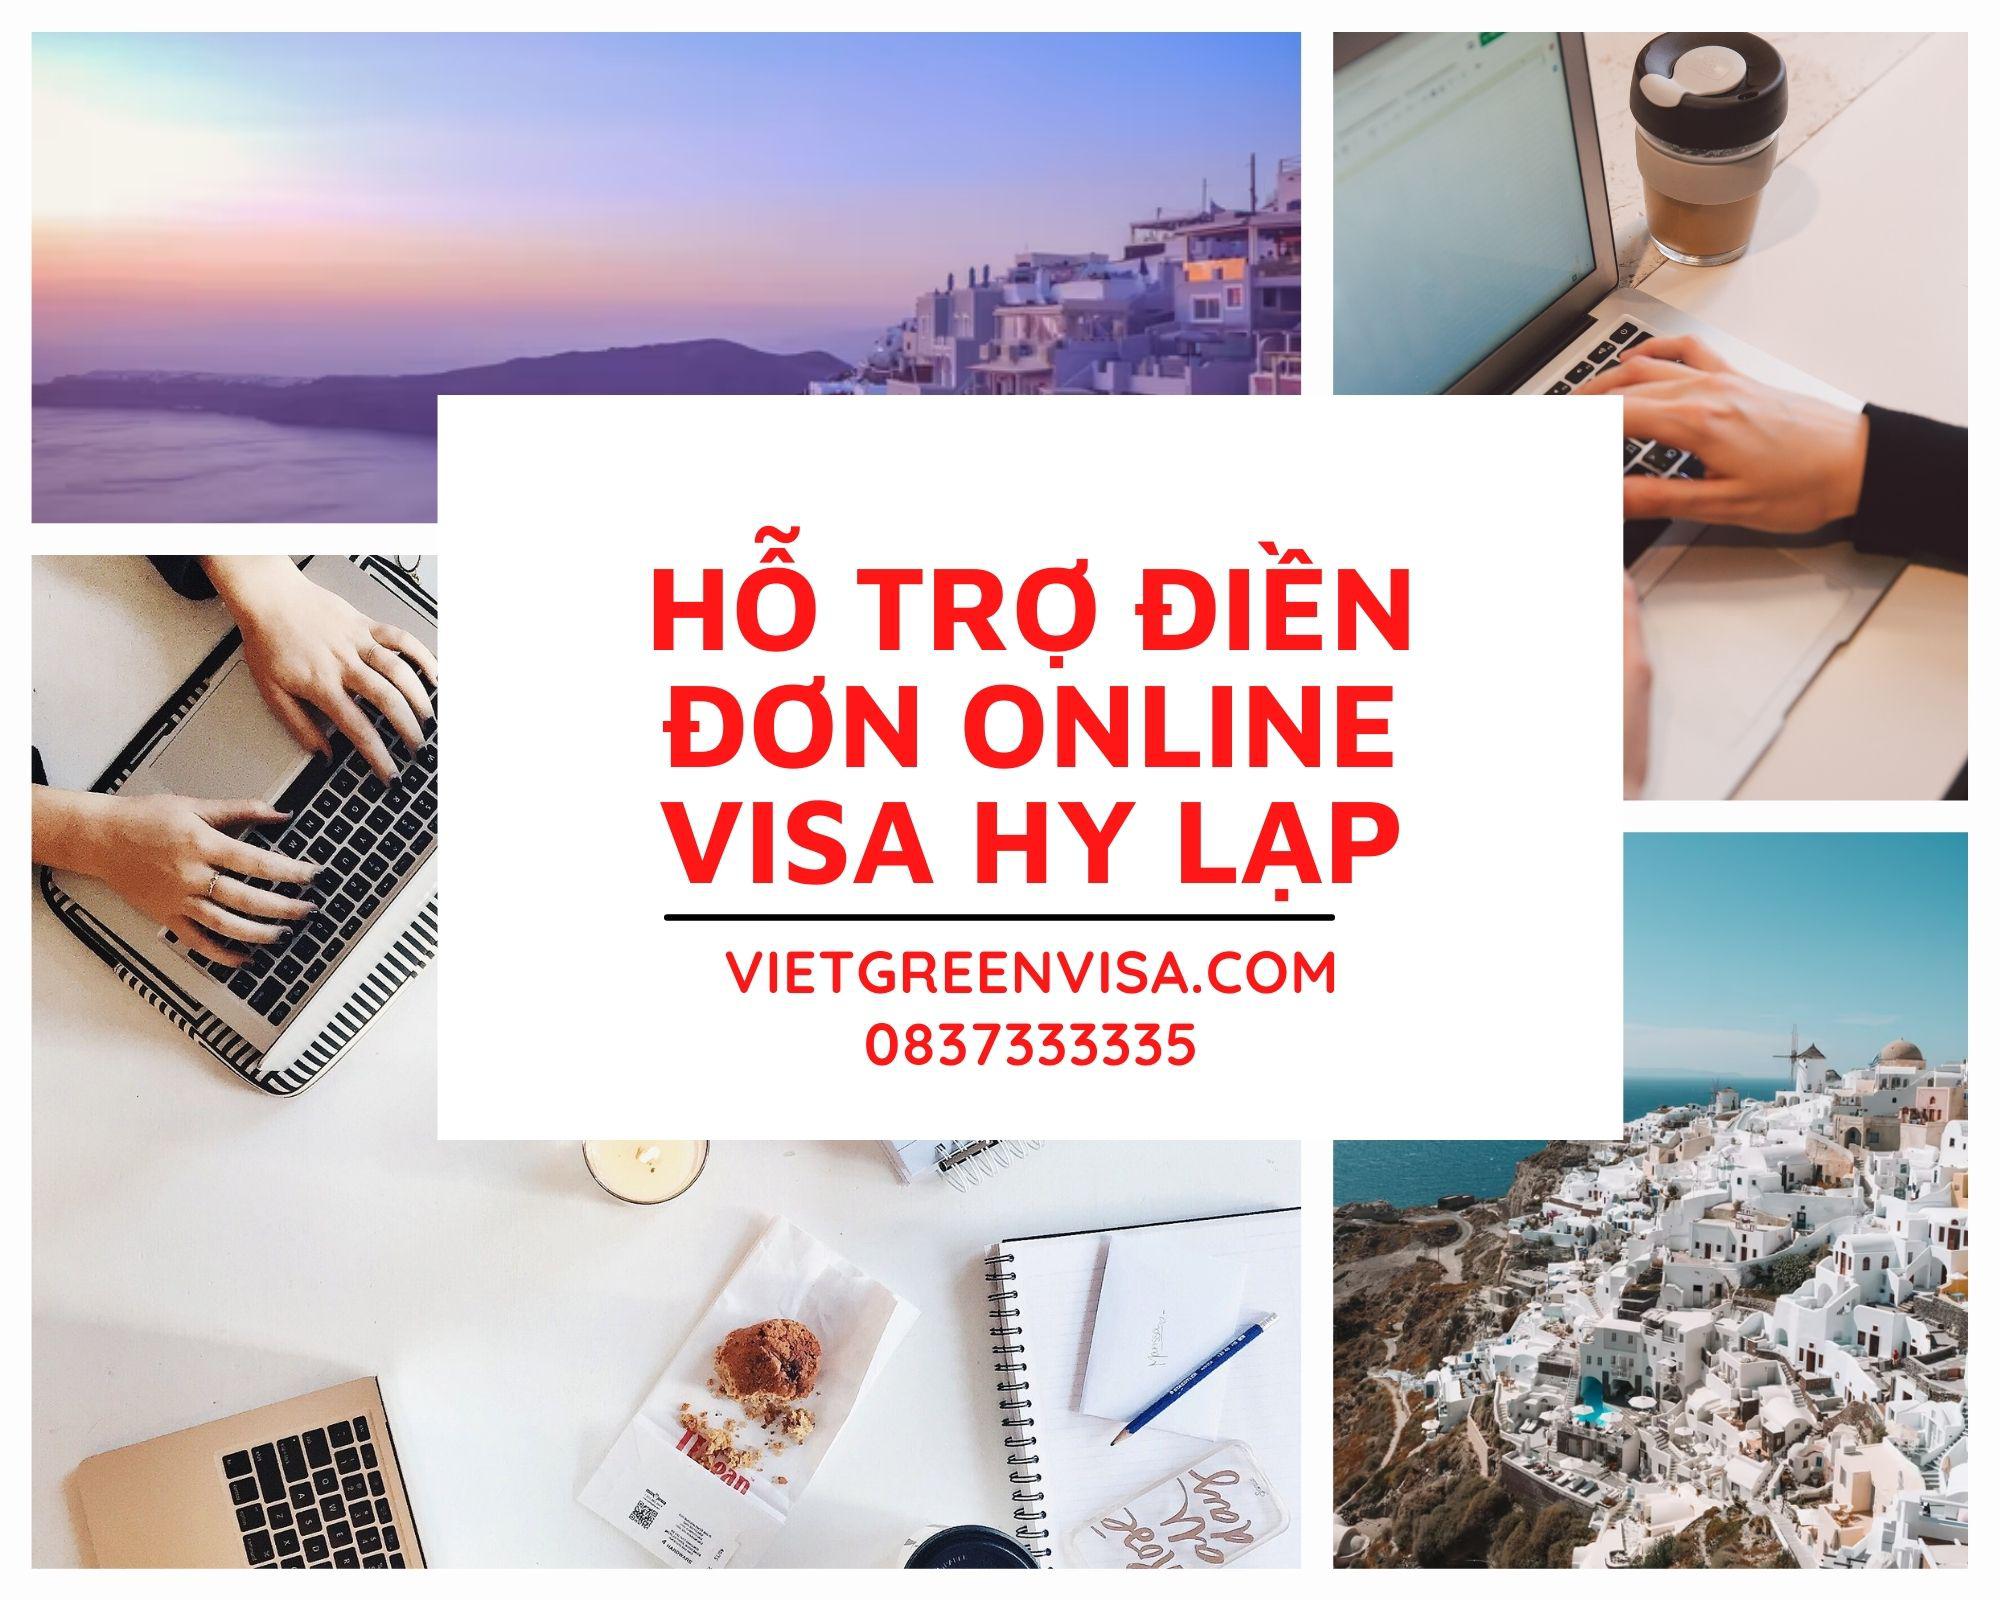 Tư vấn điền đơn visa Hy Lạp online chuyên nghiệp